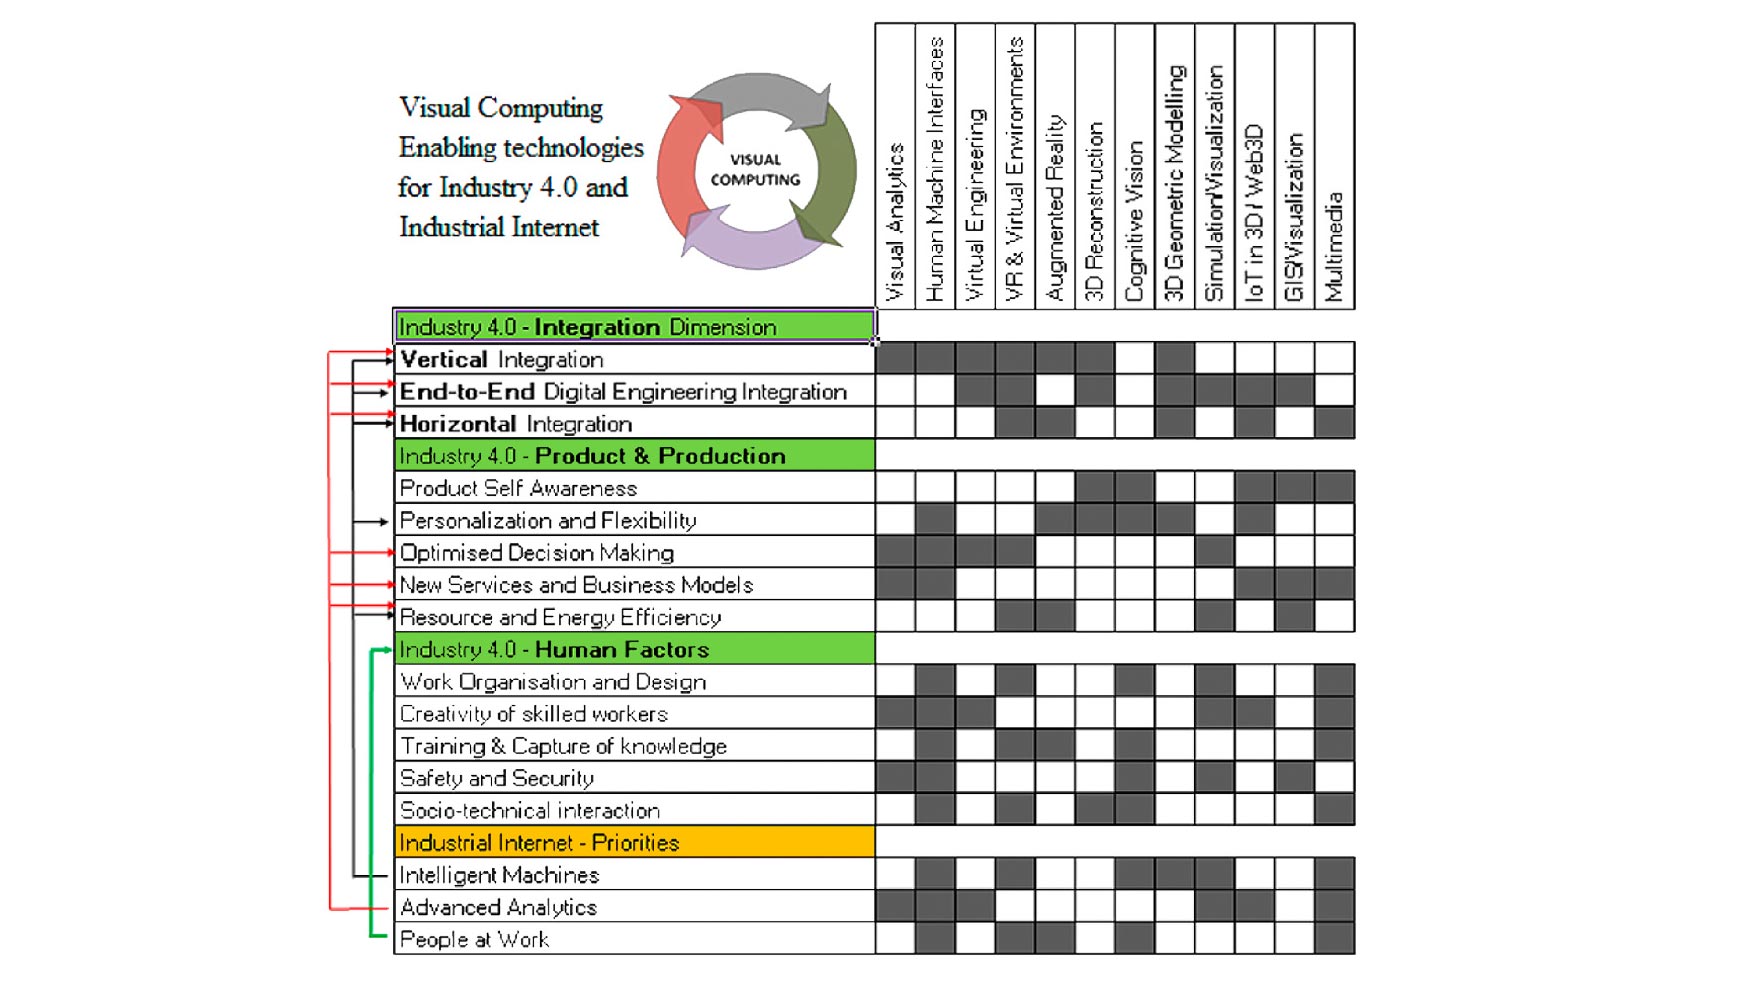 Figura 5. Tecnologas de Visual Computing relevantes para el paradigma Industria 4.0 [30]